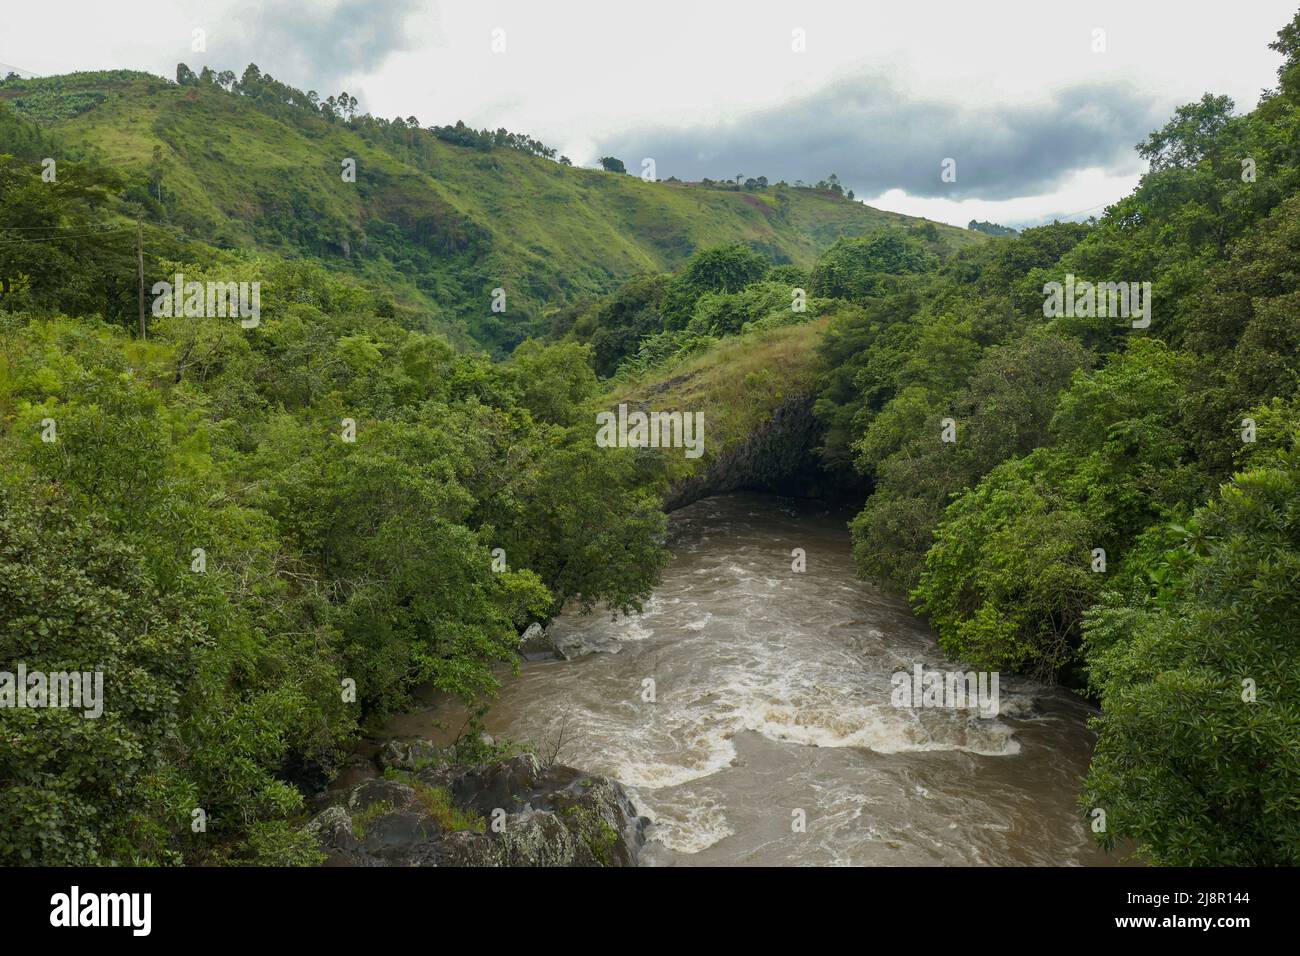 Scenic view of Kiwirar River in Mbeya, Tanzania Stock Photo